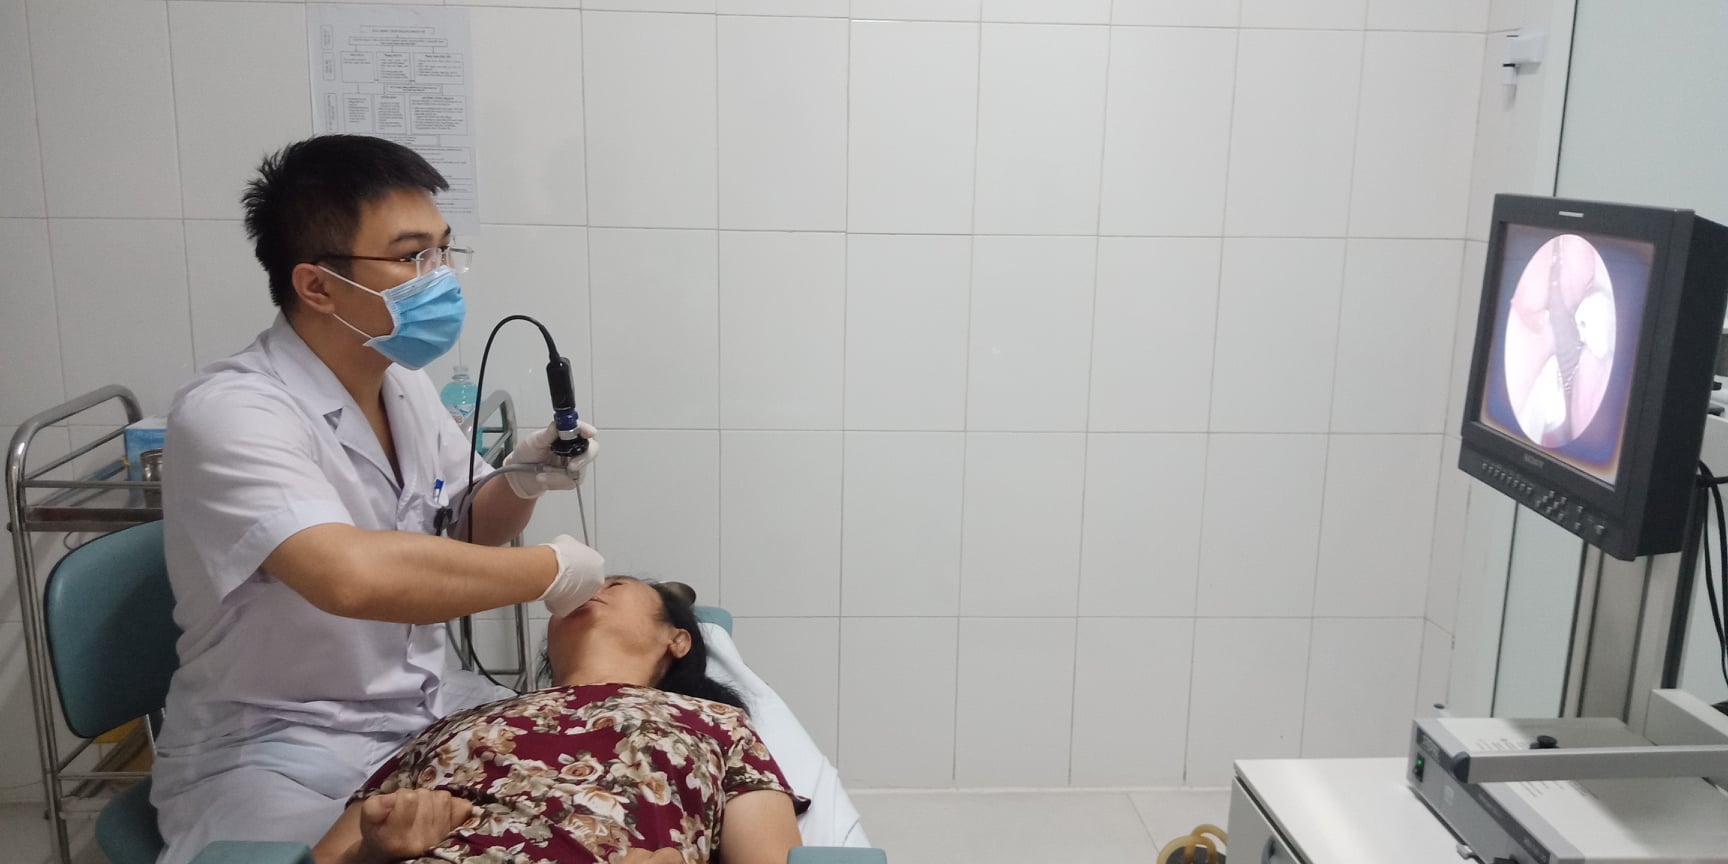 Bác sĩ Nông Hoàng Mạnh đang tiến hành thủ thuật gắp con đỉa từ mũi bệnh nhân